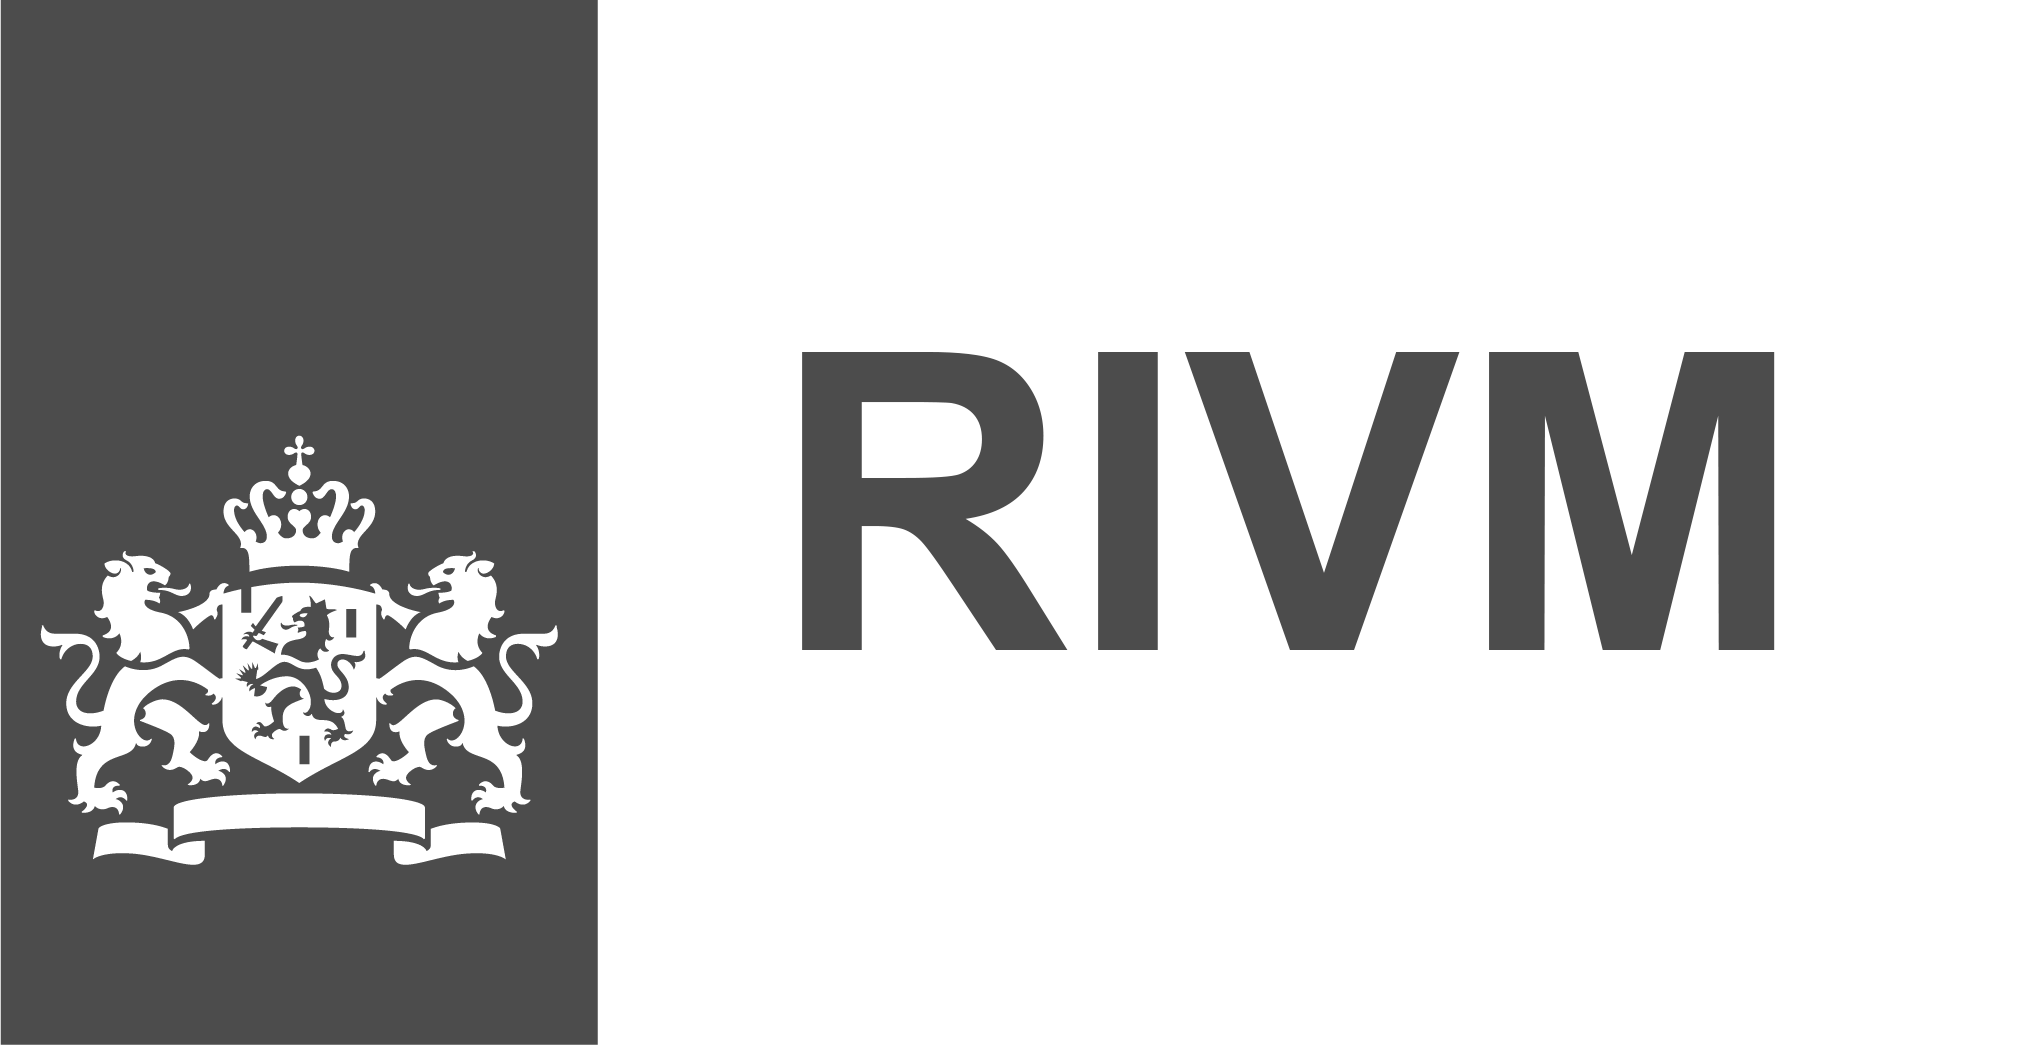 Logo RIVM